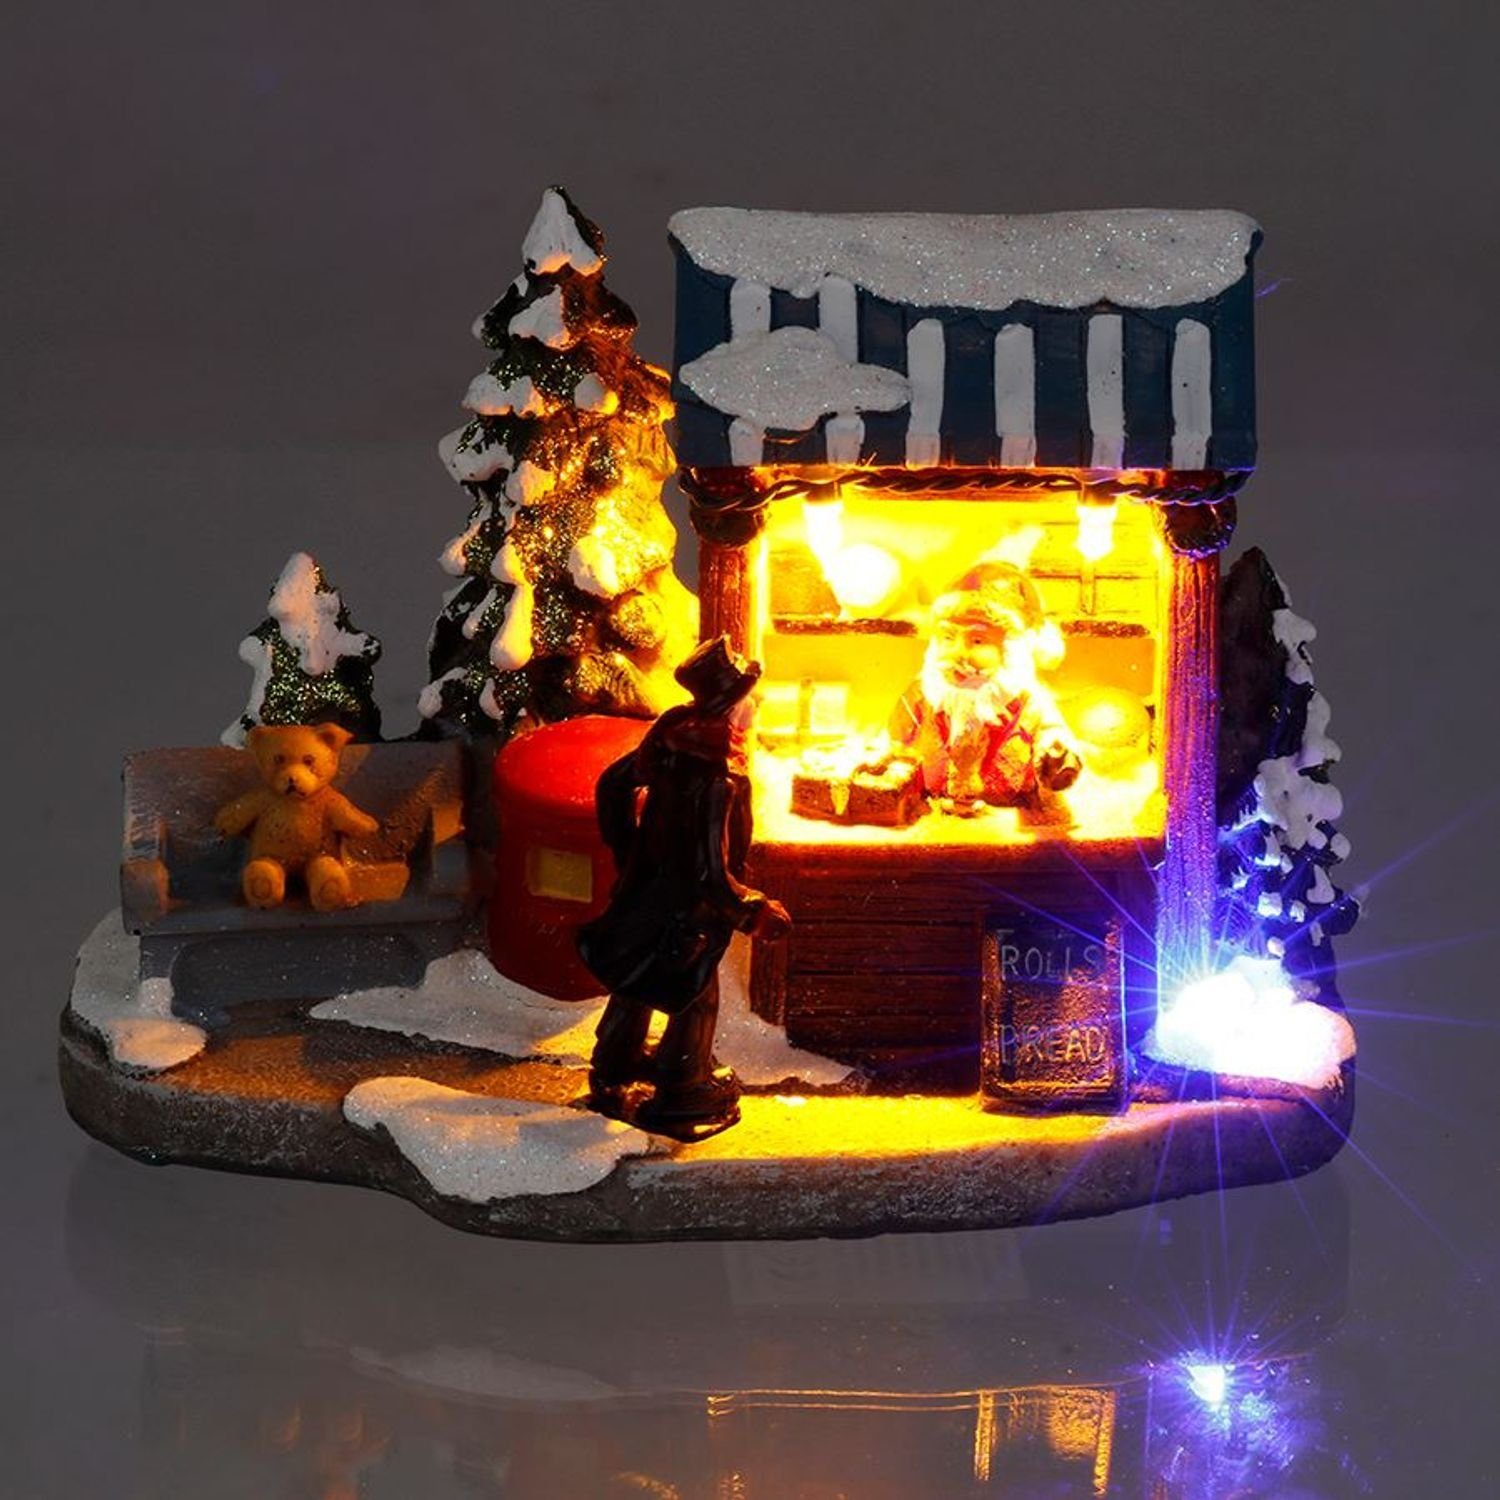 BURI Dekofigur Winterlicher Deko-Verkaufsstand mit bunten 4 LEDs